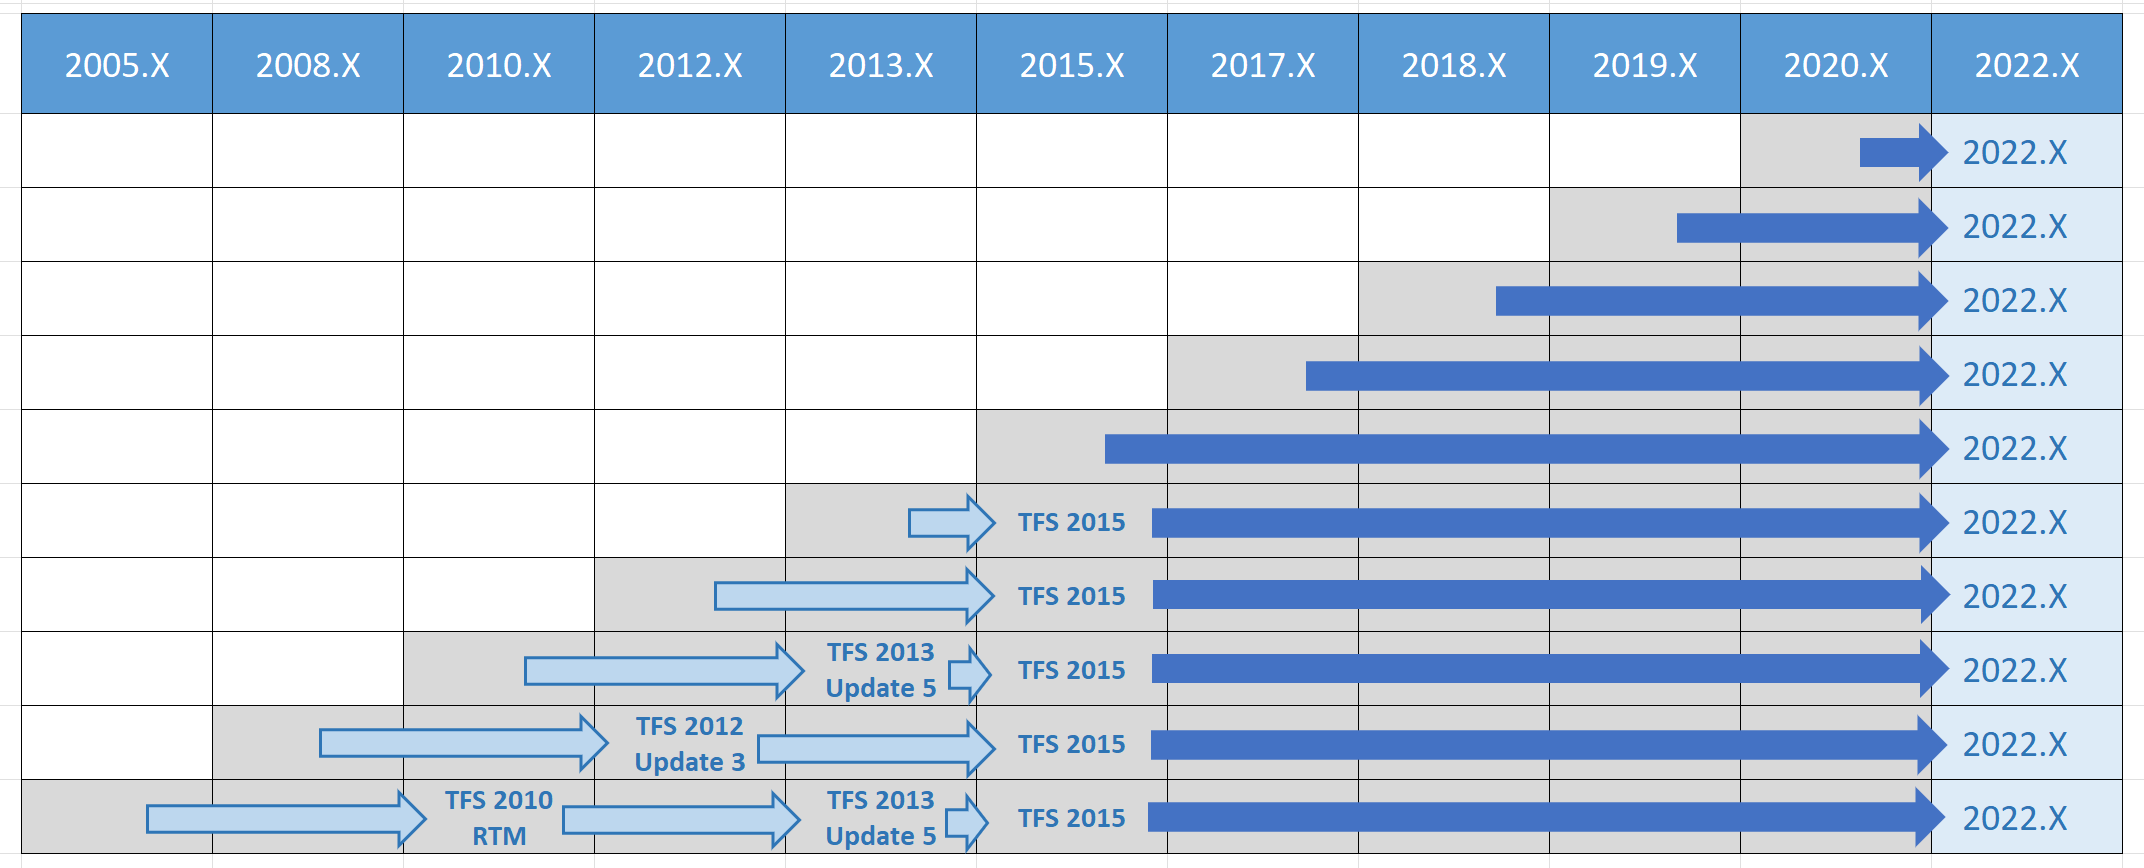 所有以前版本的 Azure DevOps 2022 升级路径矩阵。